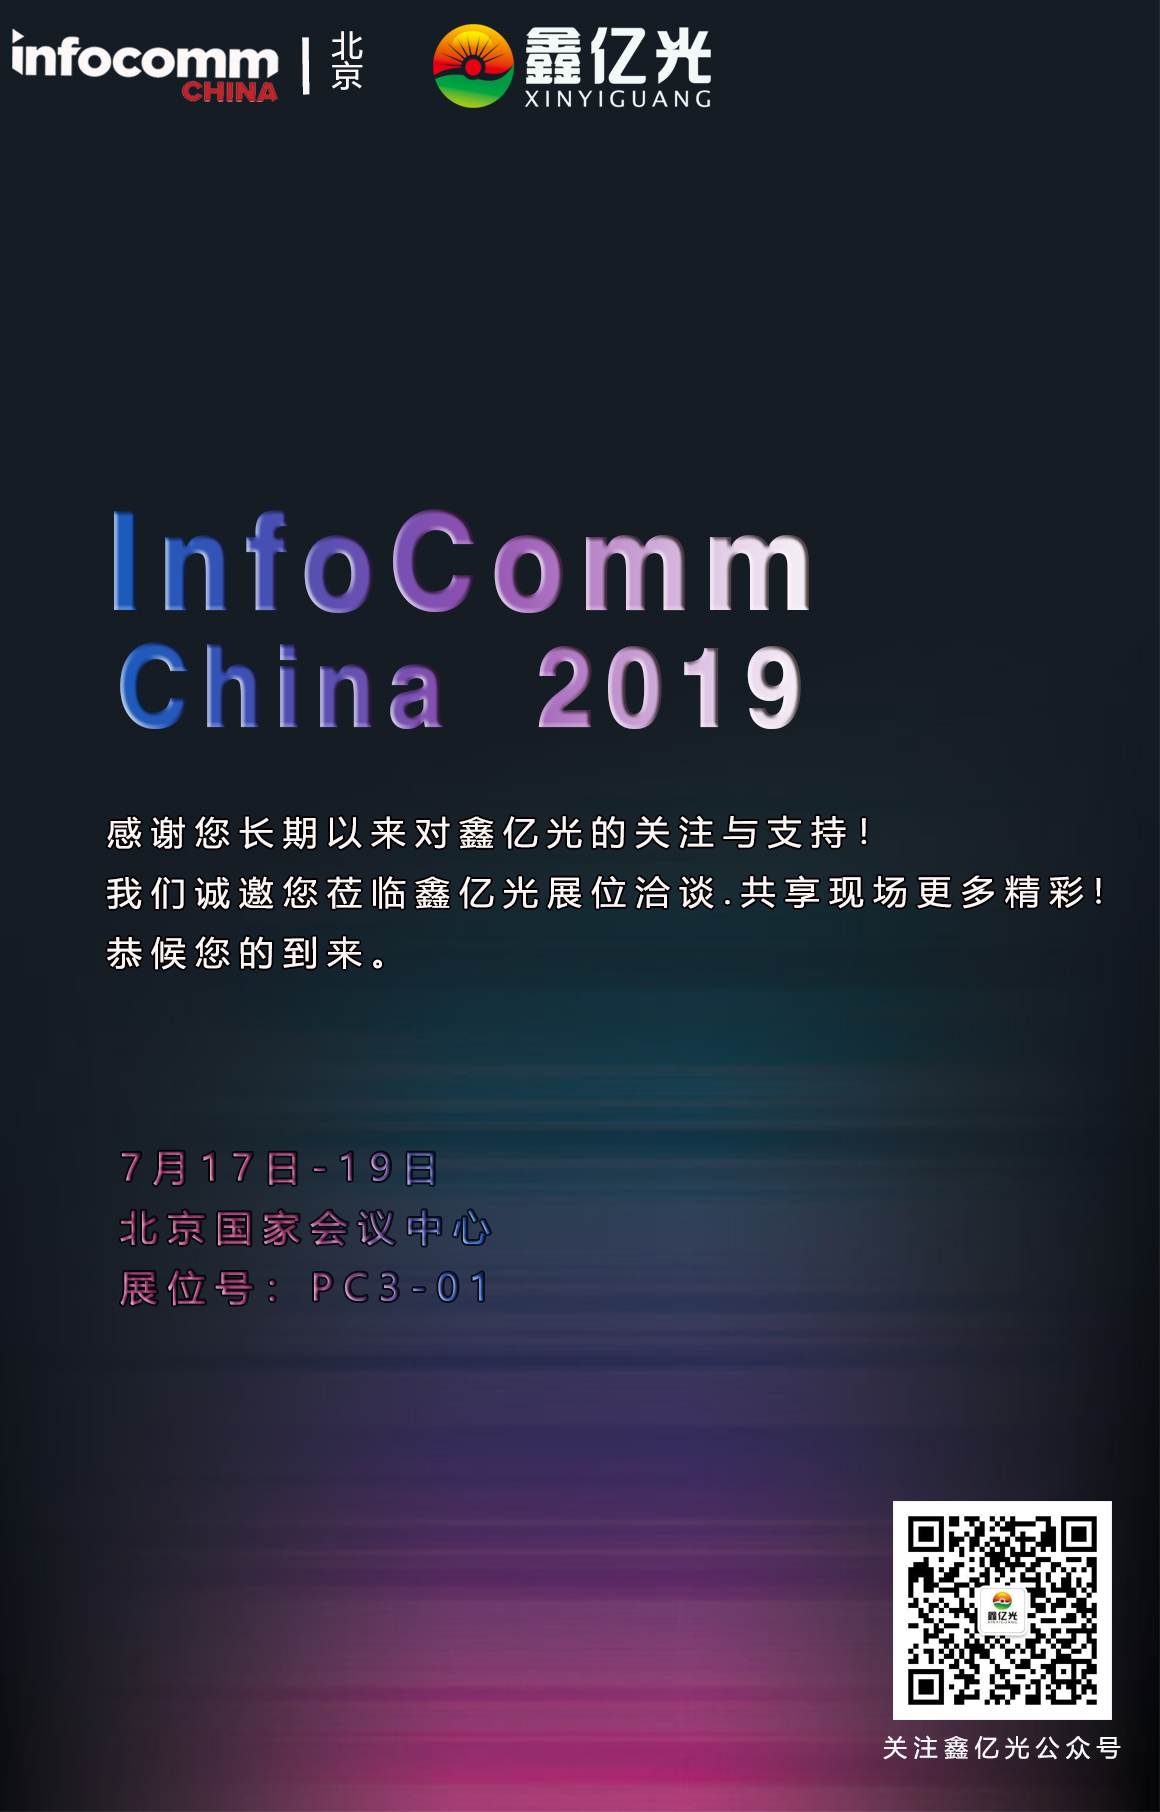 鑫億光：北京InfoComm China 2019用產品實力一展品牌風采